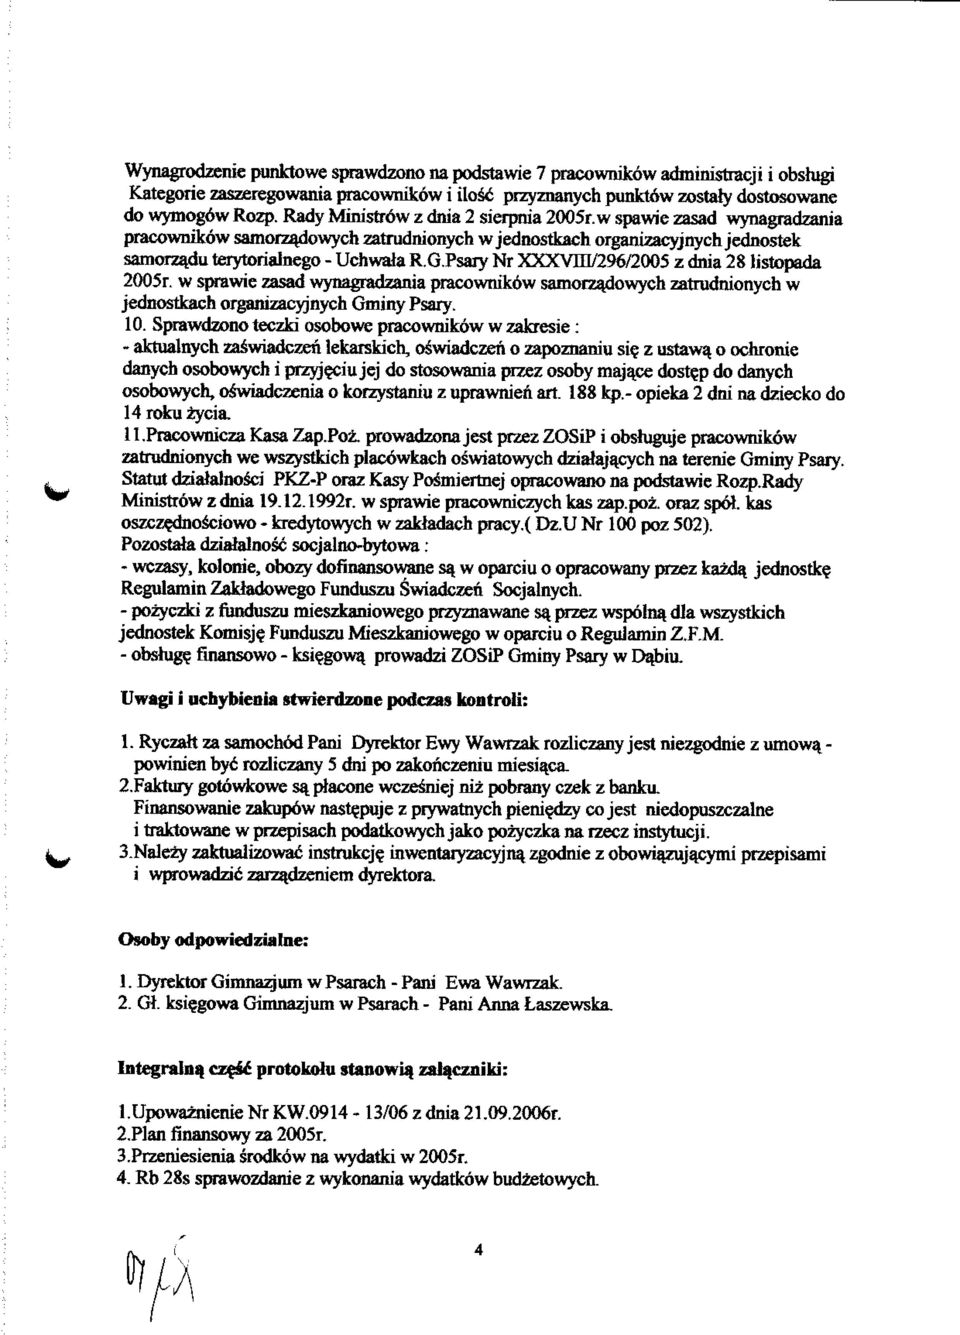 Psaiy Nr XXXVIII/296/2005 z dnia 28 listopada 2005r. w sprawie zasad wynagradzania pracownikdw samorzadowych zatrudnionych w jednostkach organizacyjnych Gminy Psary. 10.